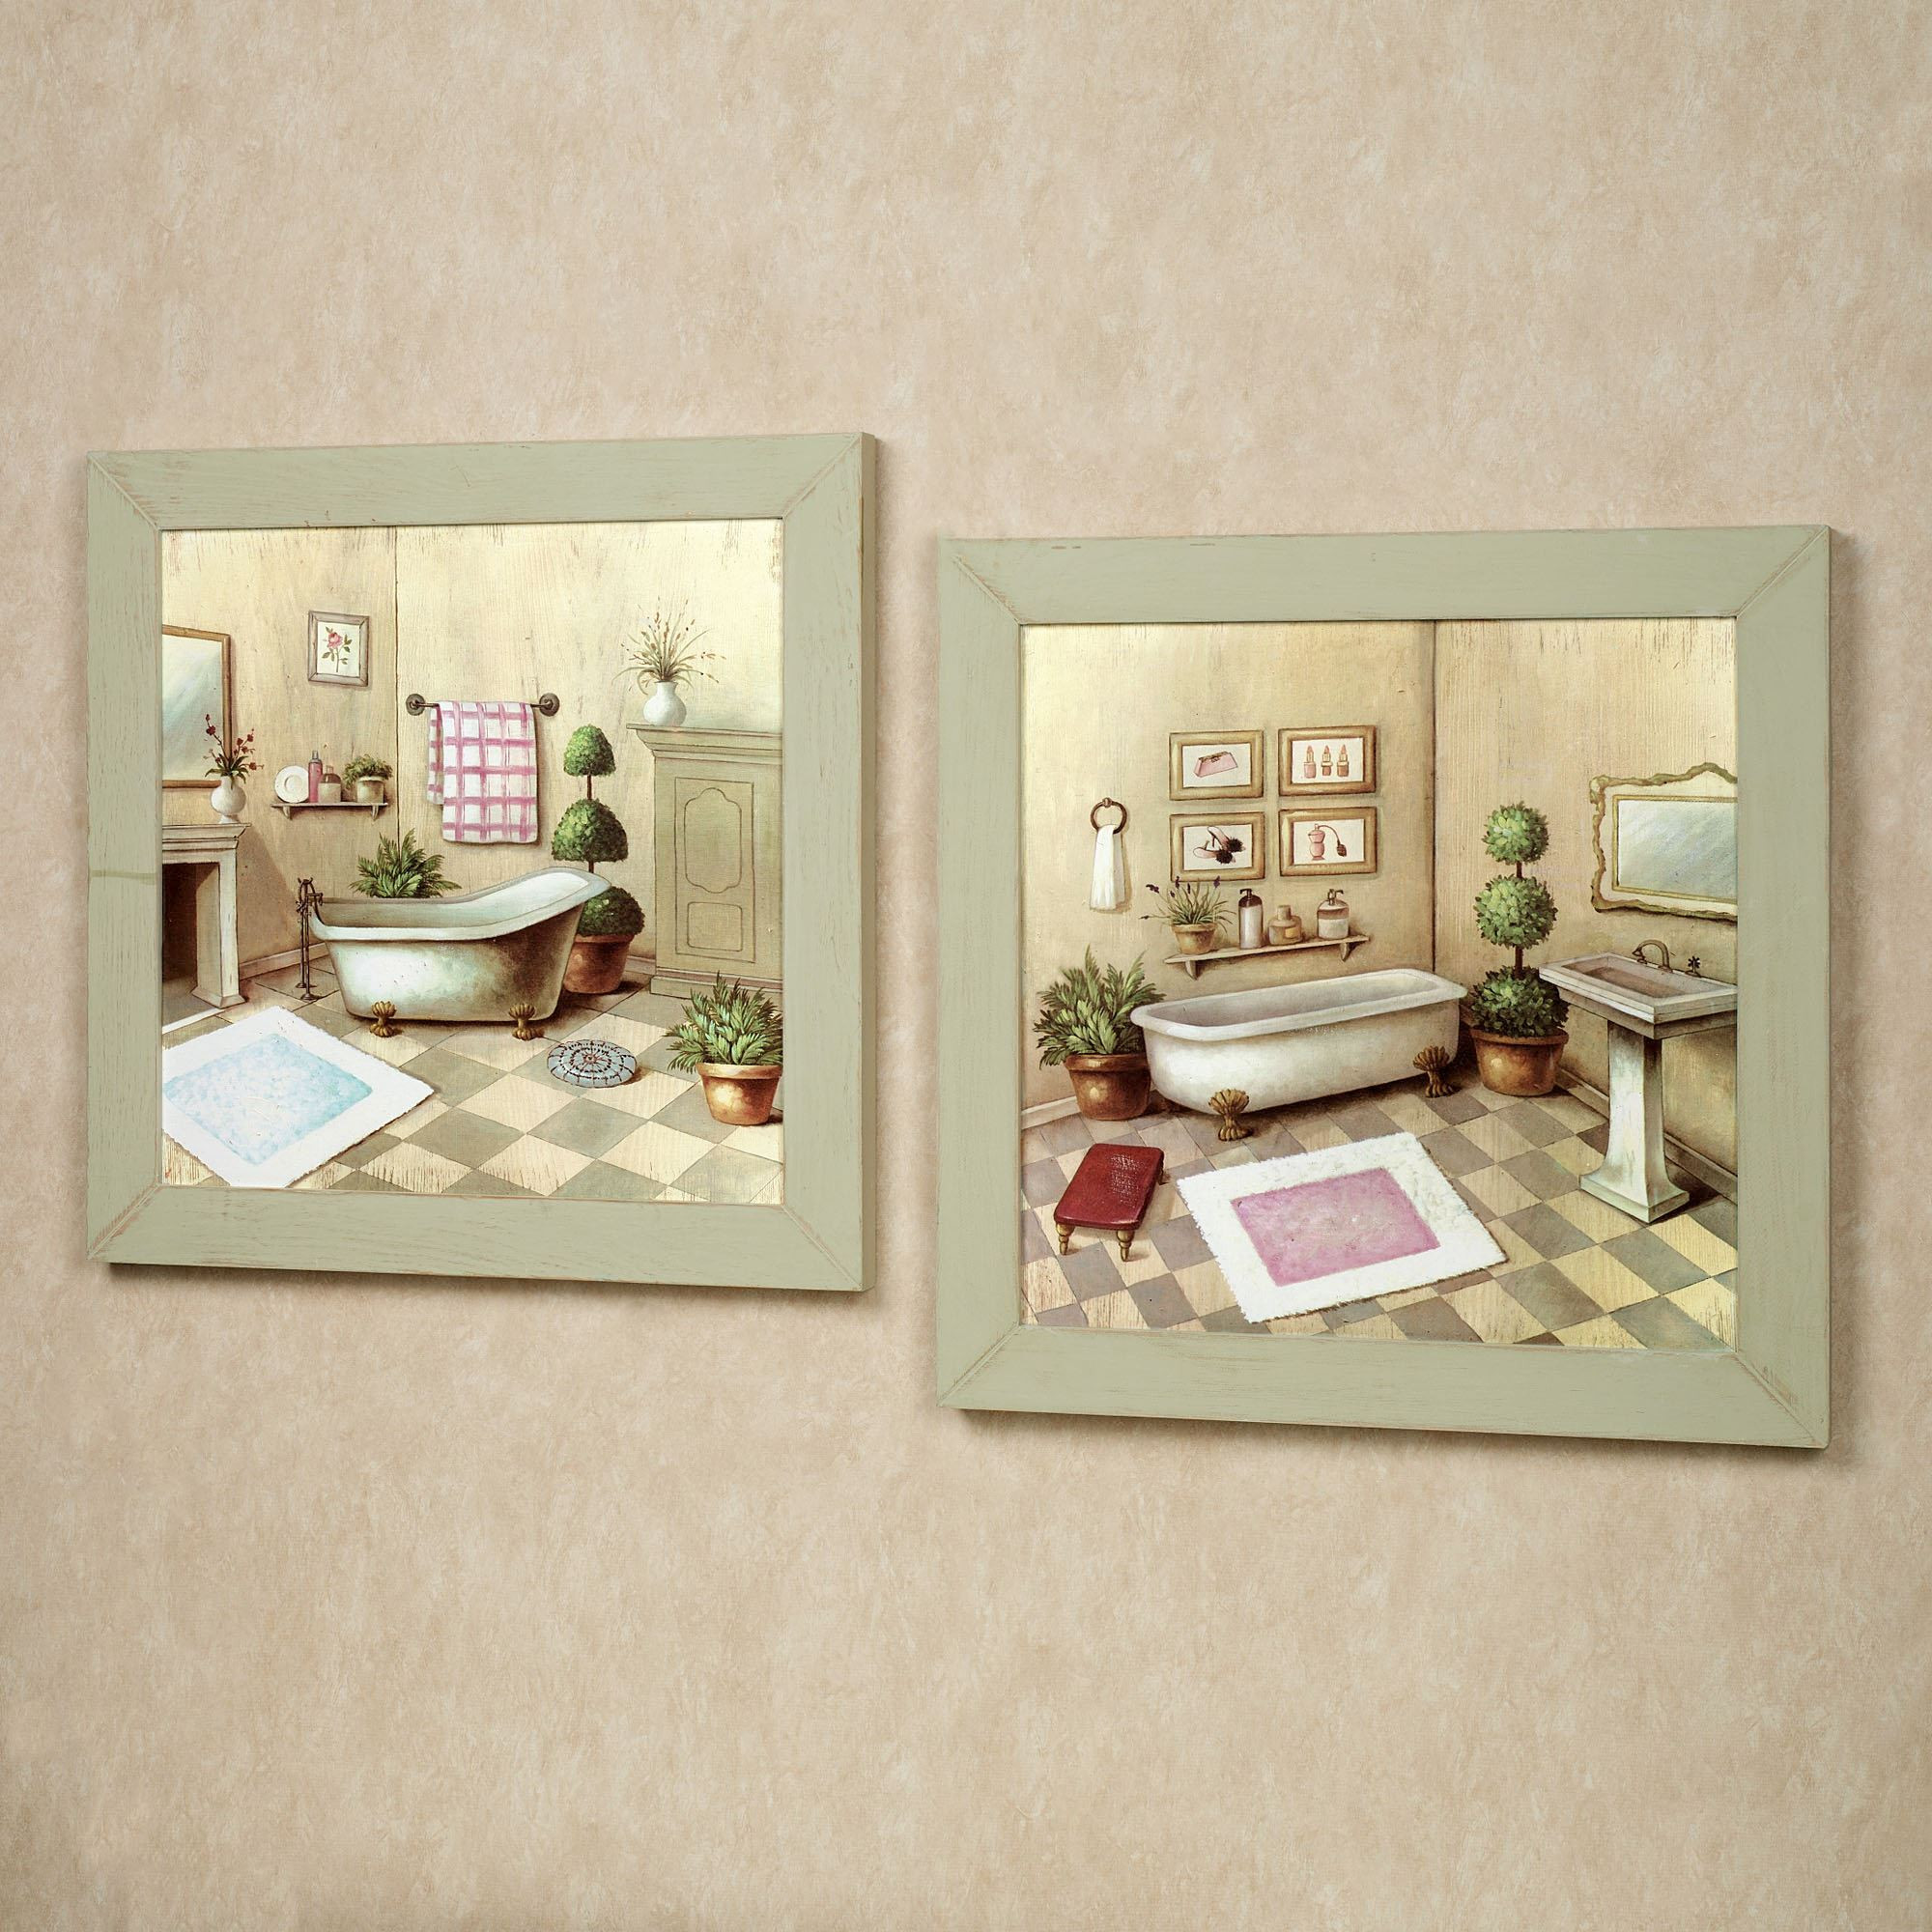 Bathroom Prints For Wall
 Garran Bathroom Washtub Framed Wall Art Set